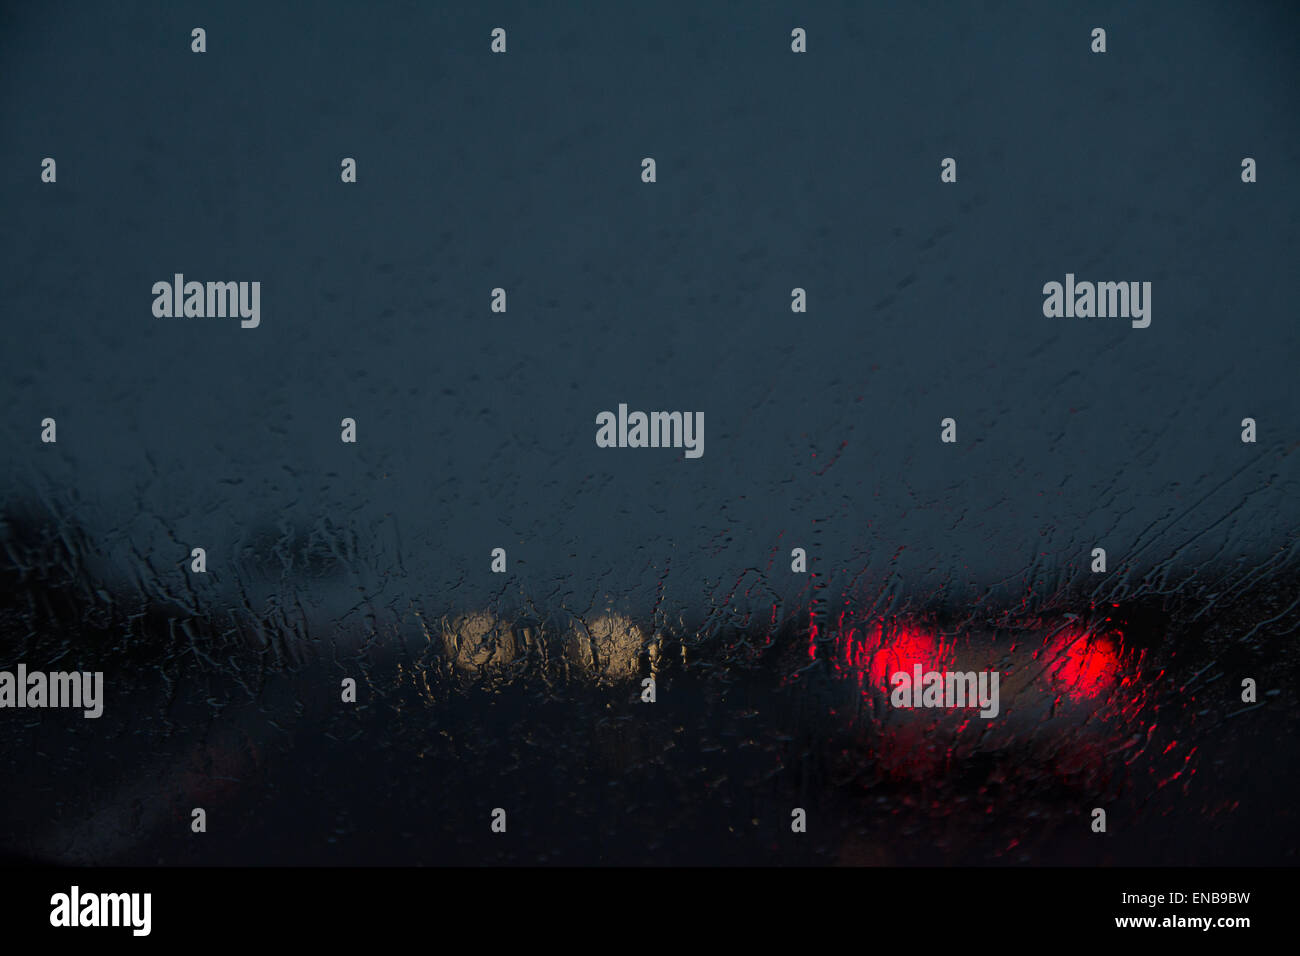 Schwierige Fahrbedingungen in der Nacht - Blick durch Regen auf der Windschutzscheibe - UK-Autobahn Stockfoto